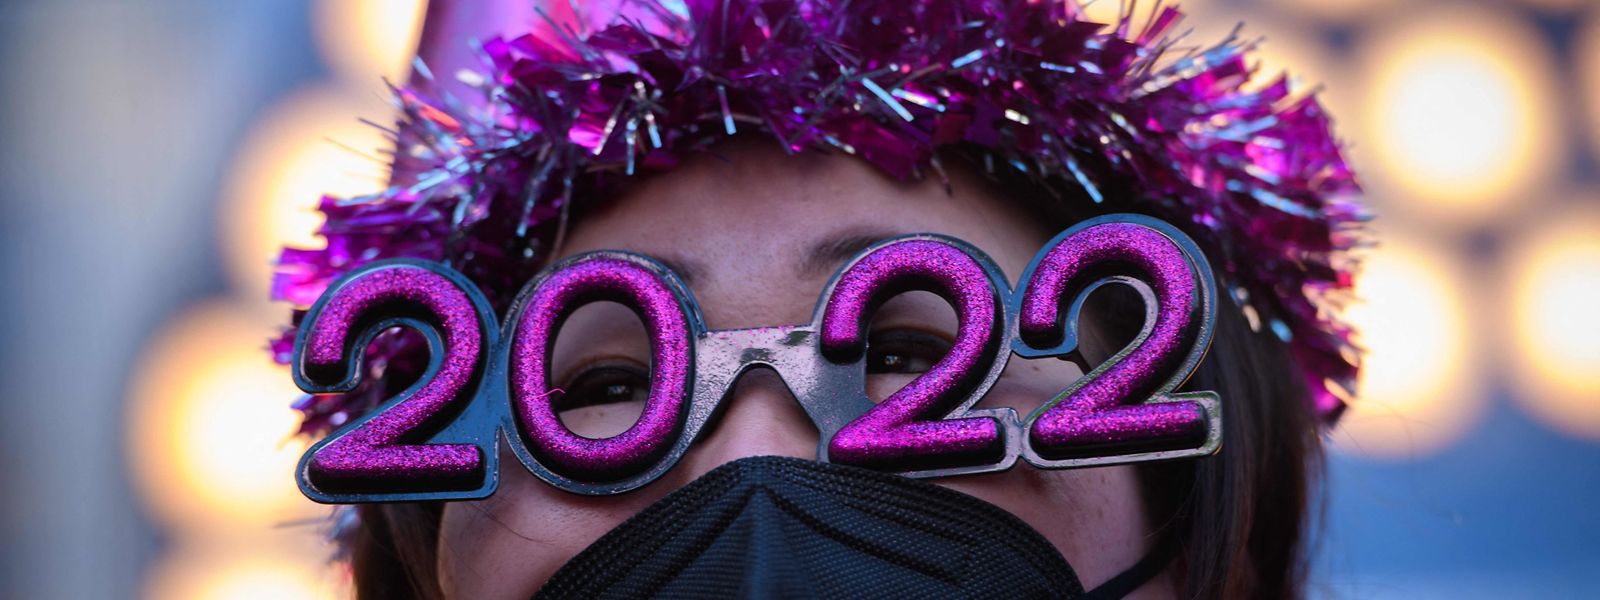 Man sollte das neue Jahr nicht durch die rosarote Brille sehen. Noch ist die Pandemie nicht überwunden.